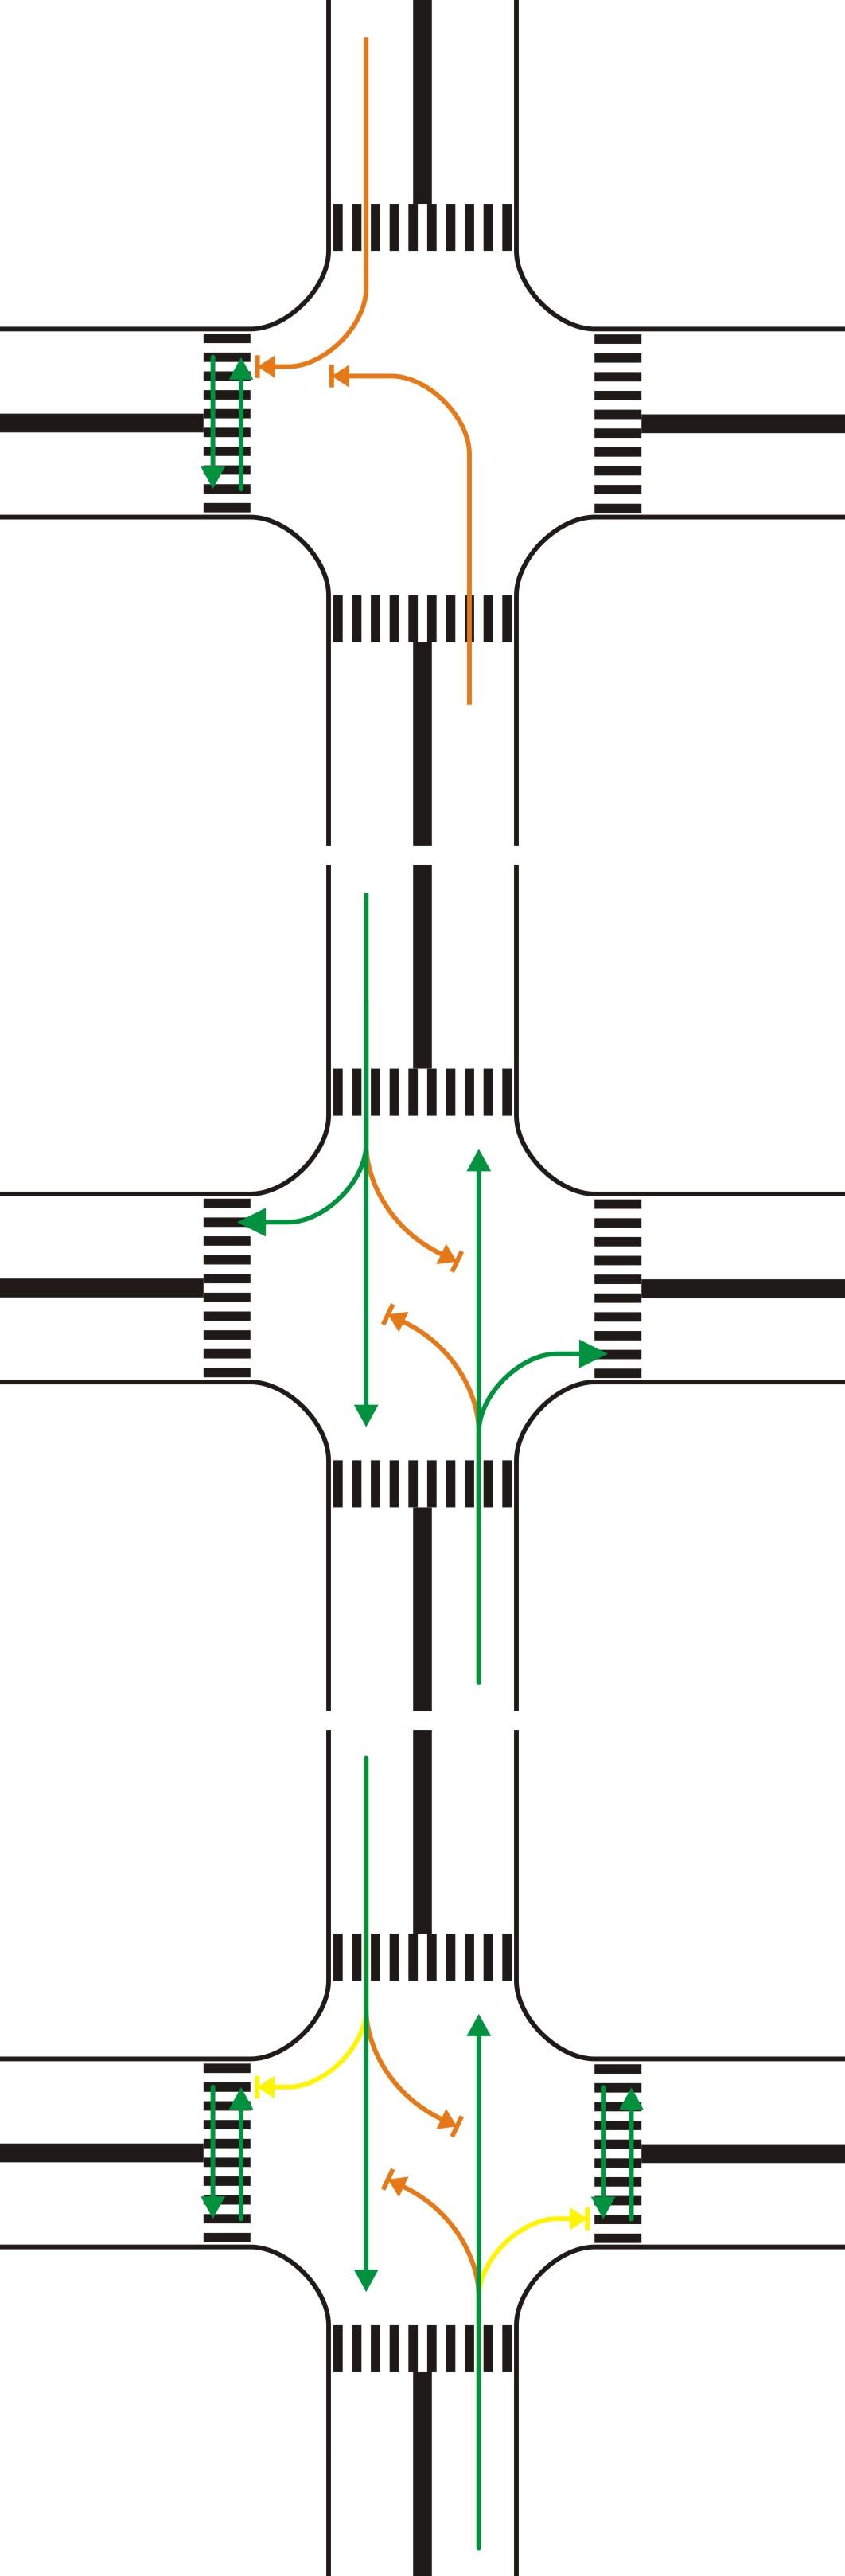 如何看待十字路口的机动车转弯红绿灯会和行人红绿灯有冲突? 